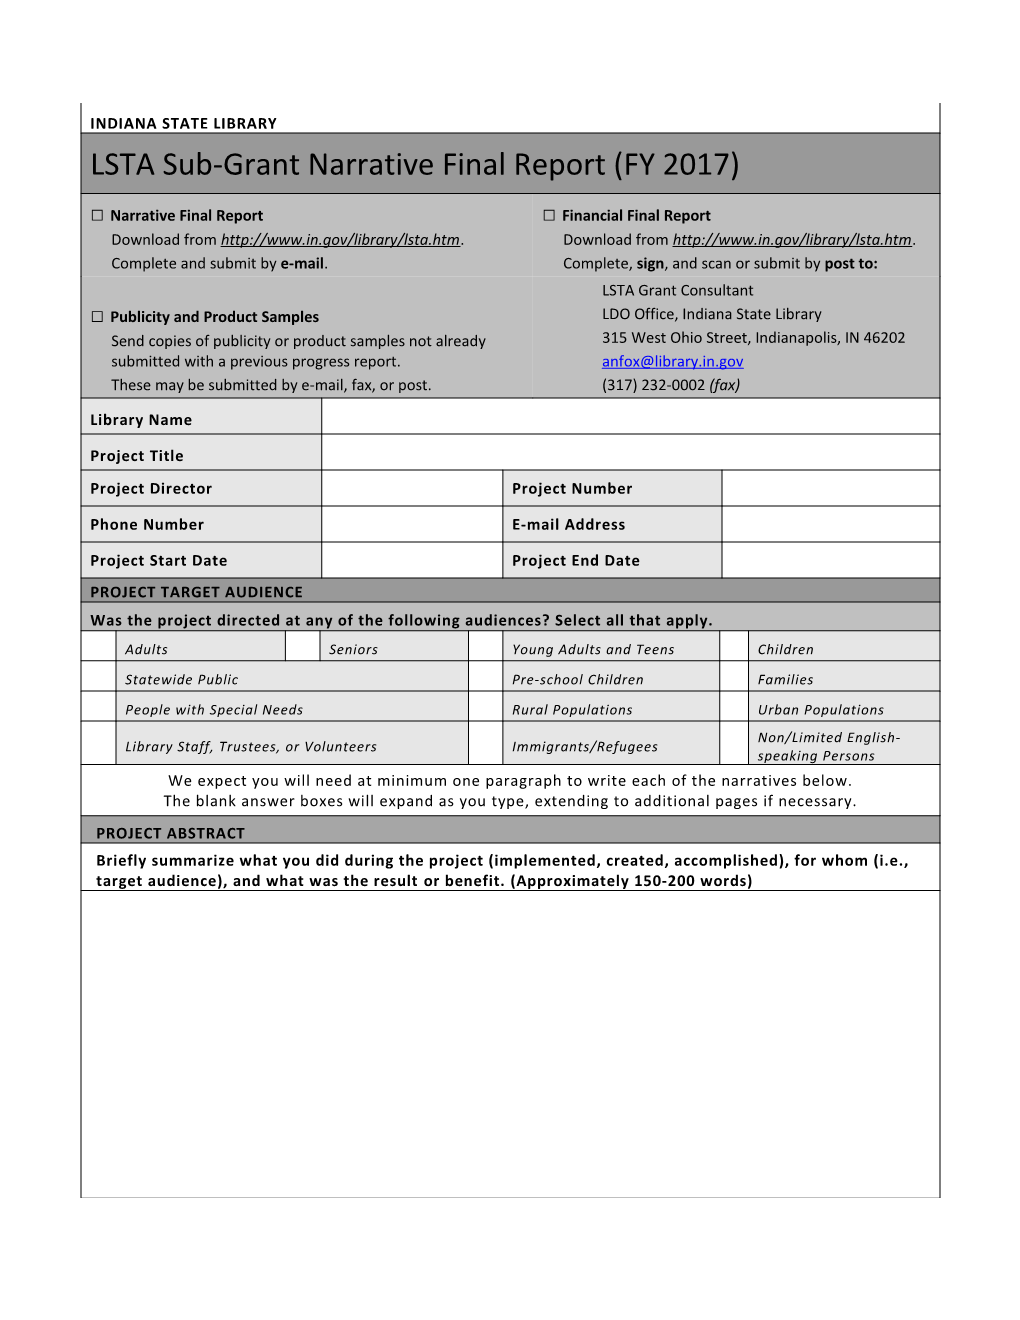 LSTA Sub-Grant Narrative Final Report (FY 2017)